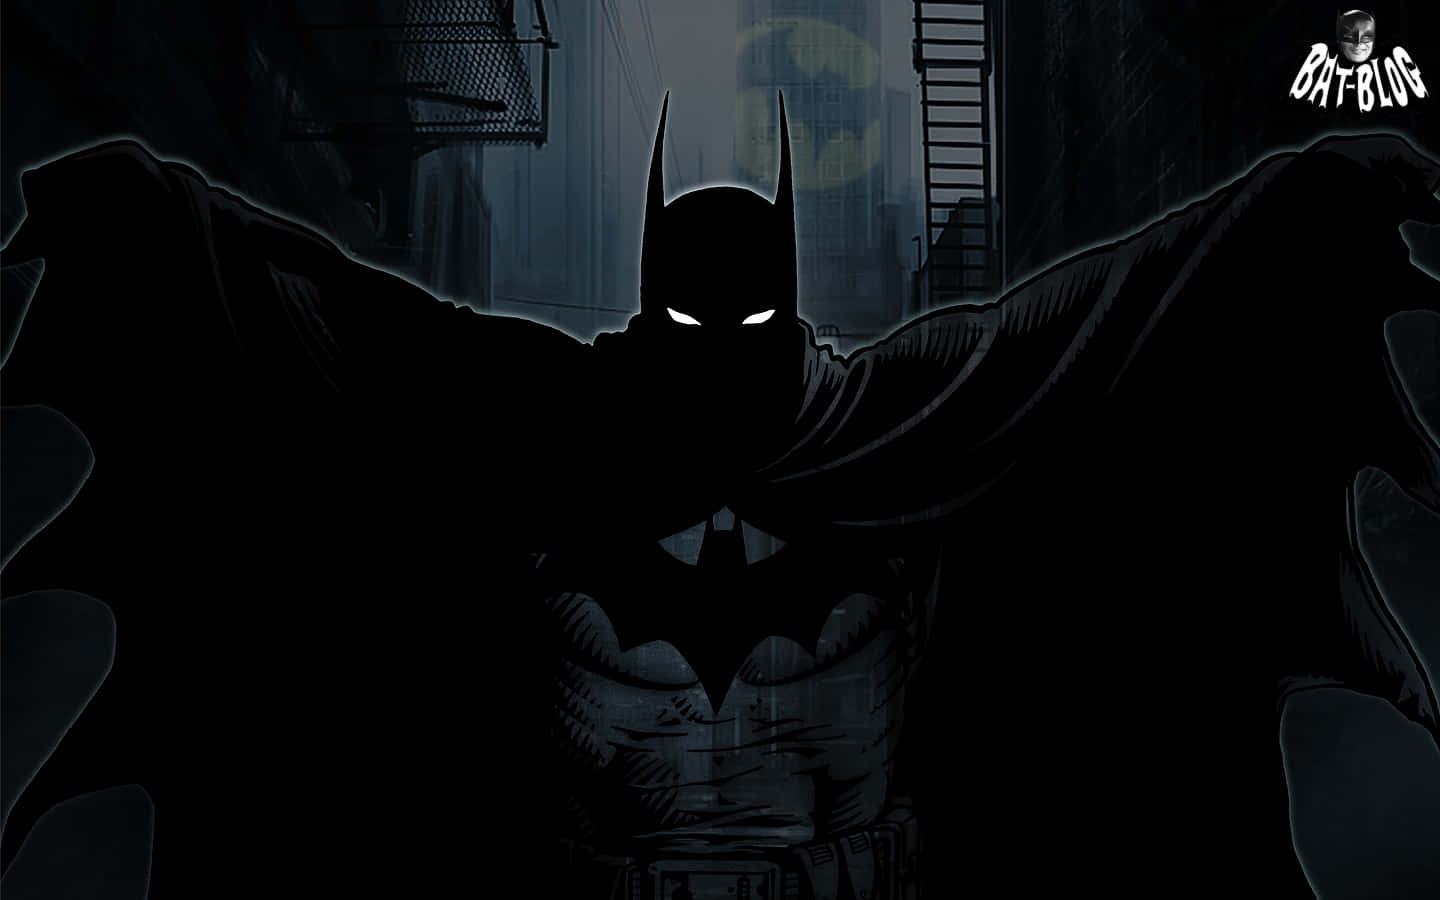 Fondosde Pantalla De Batman - Fondos De Pantalla De Batman Fondo de pantalla